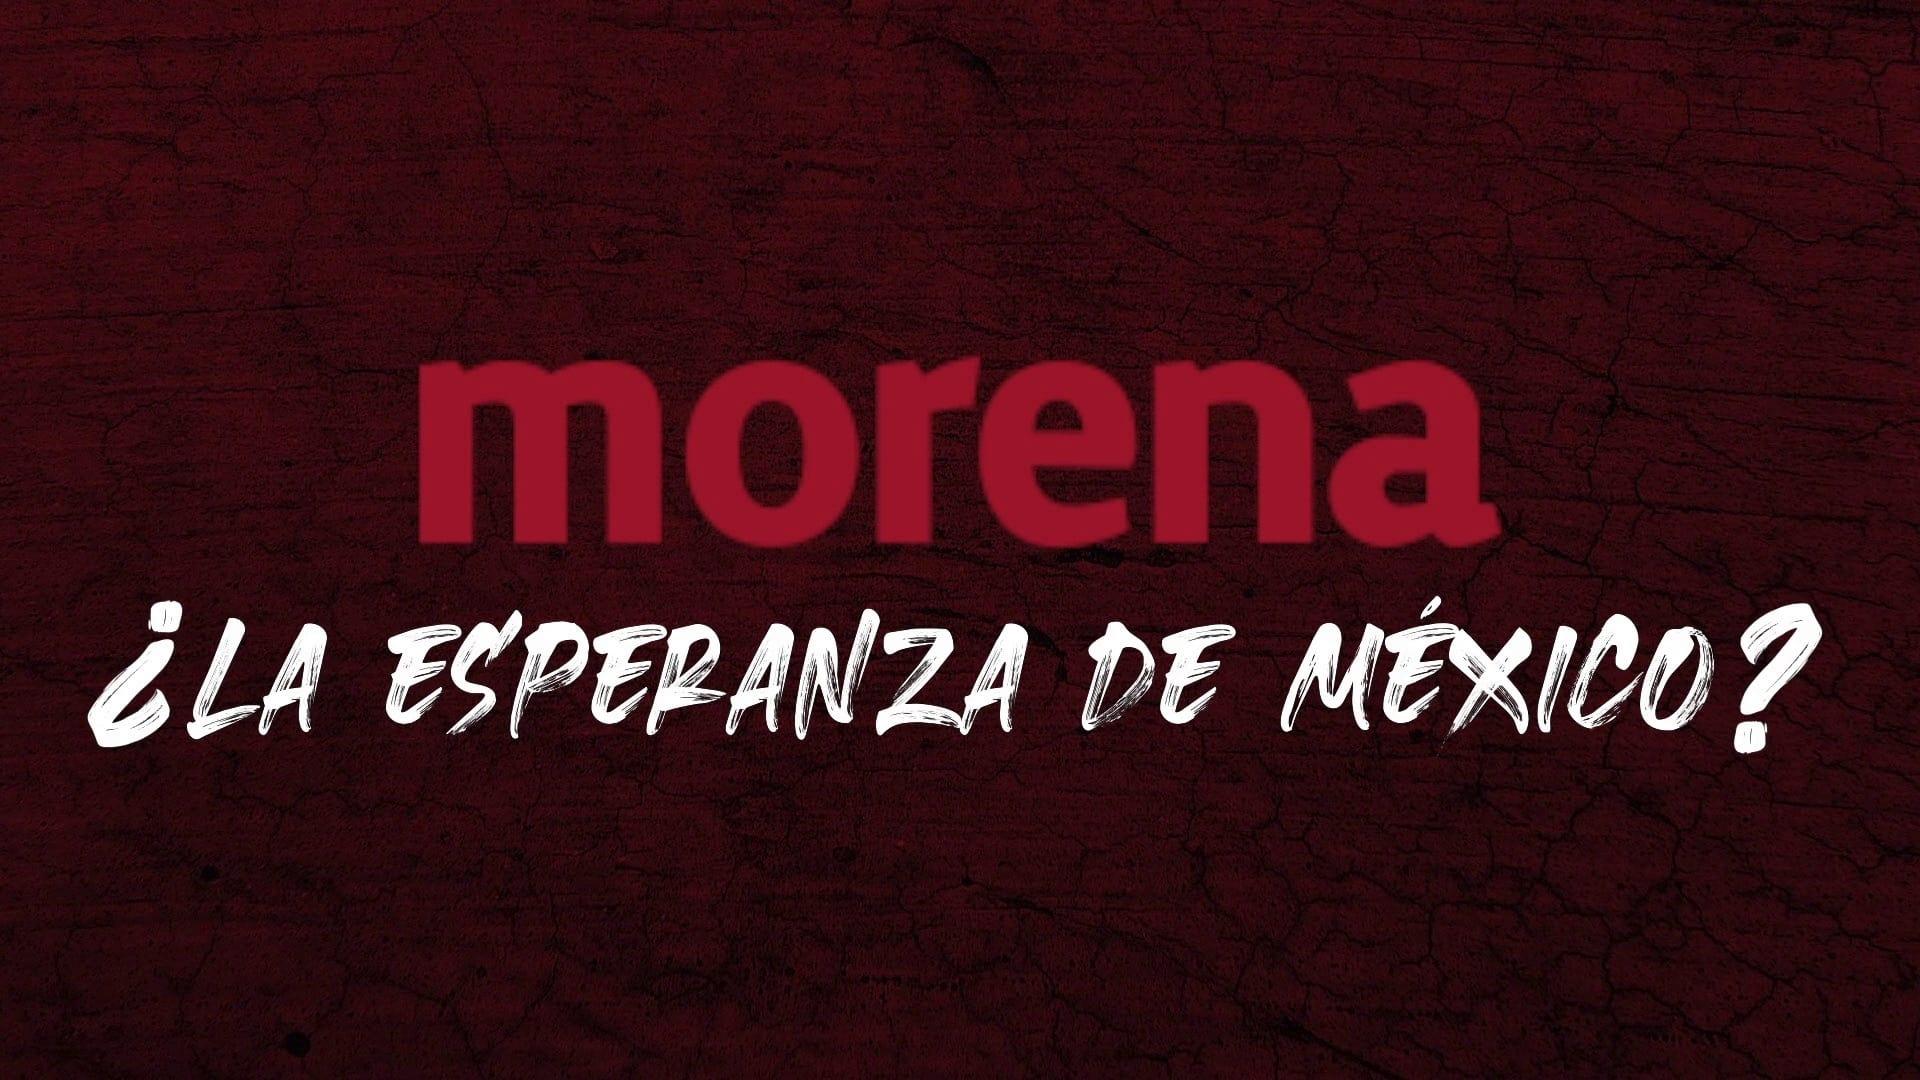 Morena ¿La esperanza de México? backdrop